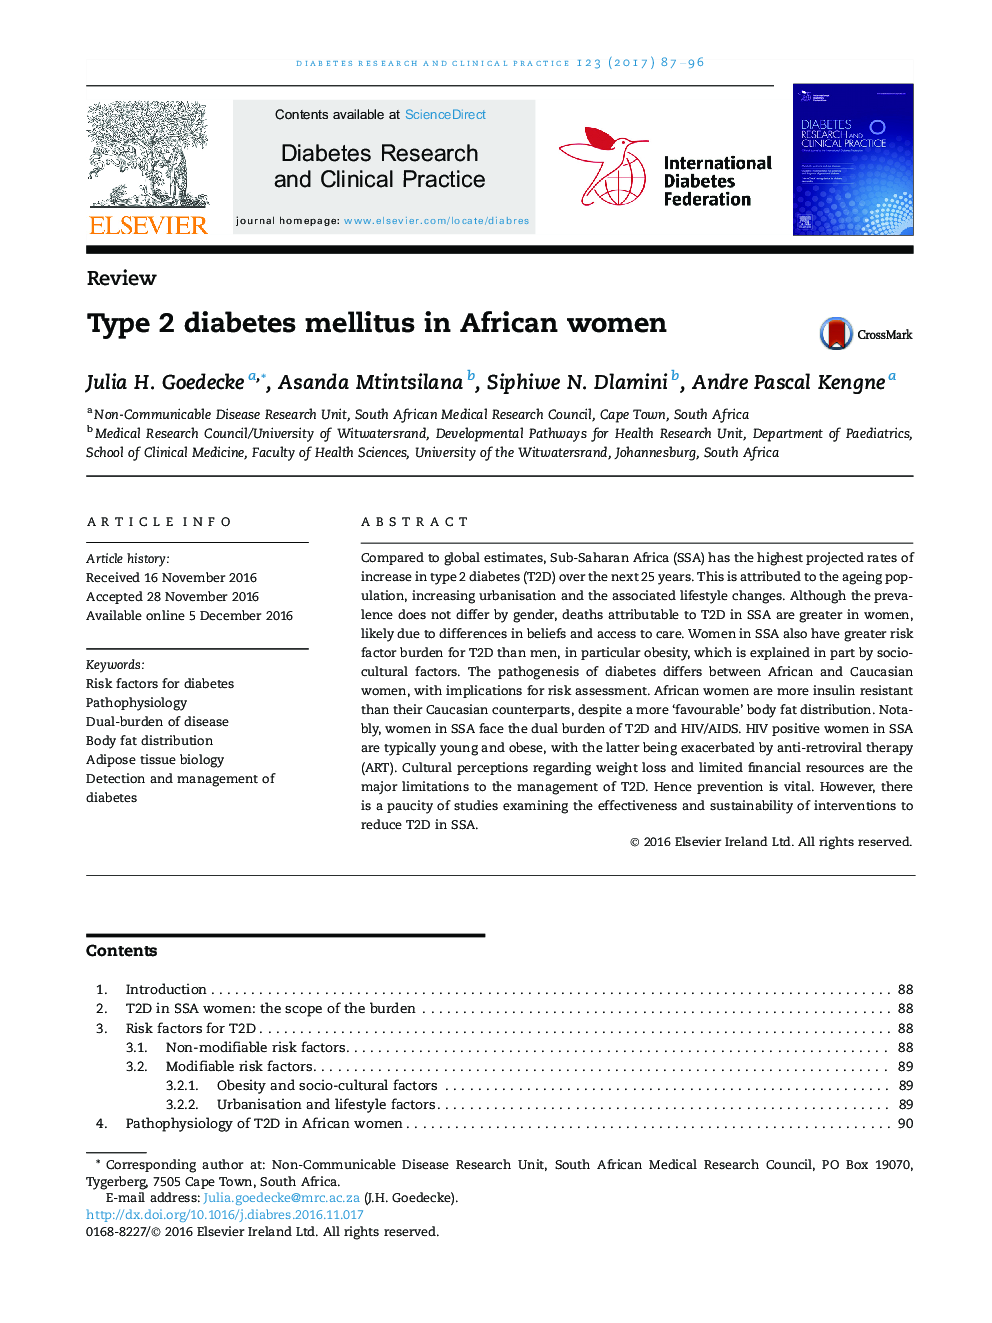 دیابت نوع 2 در زنان آفریقایی 